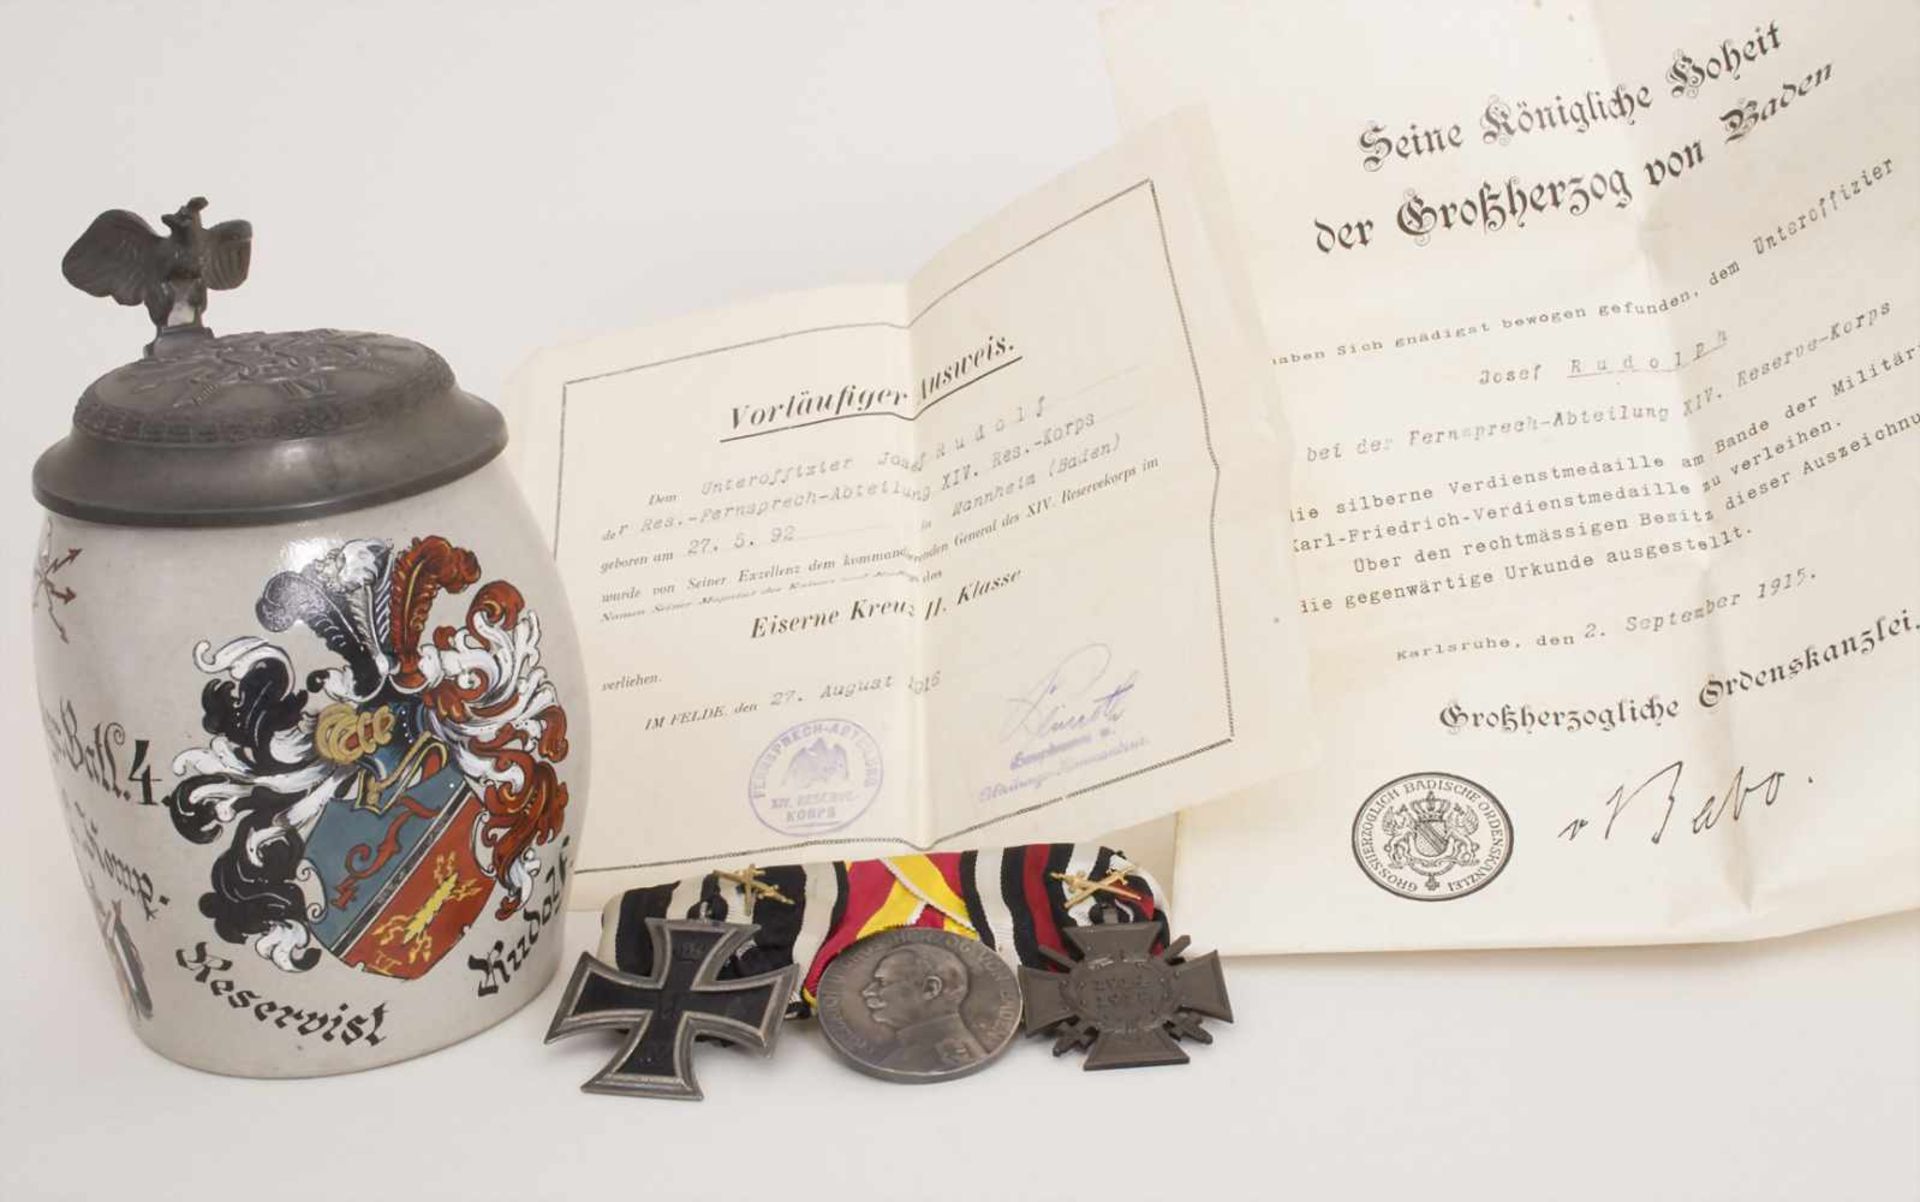 Reservistenkrug und Ordenspange mit Urkunden / A reservist beer mug and military orders,